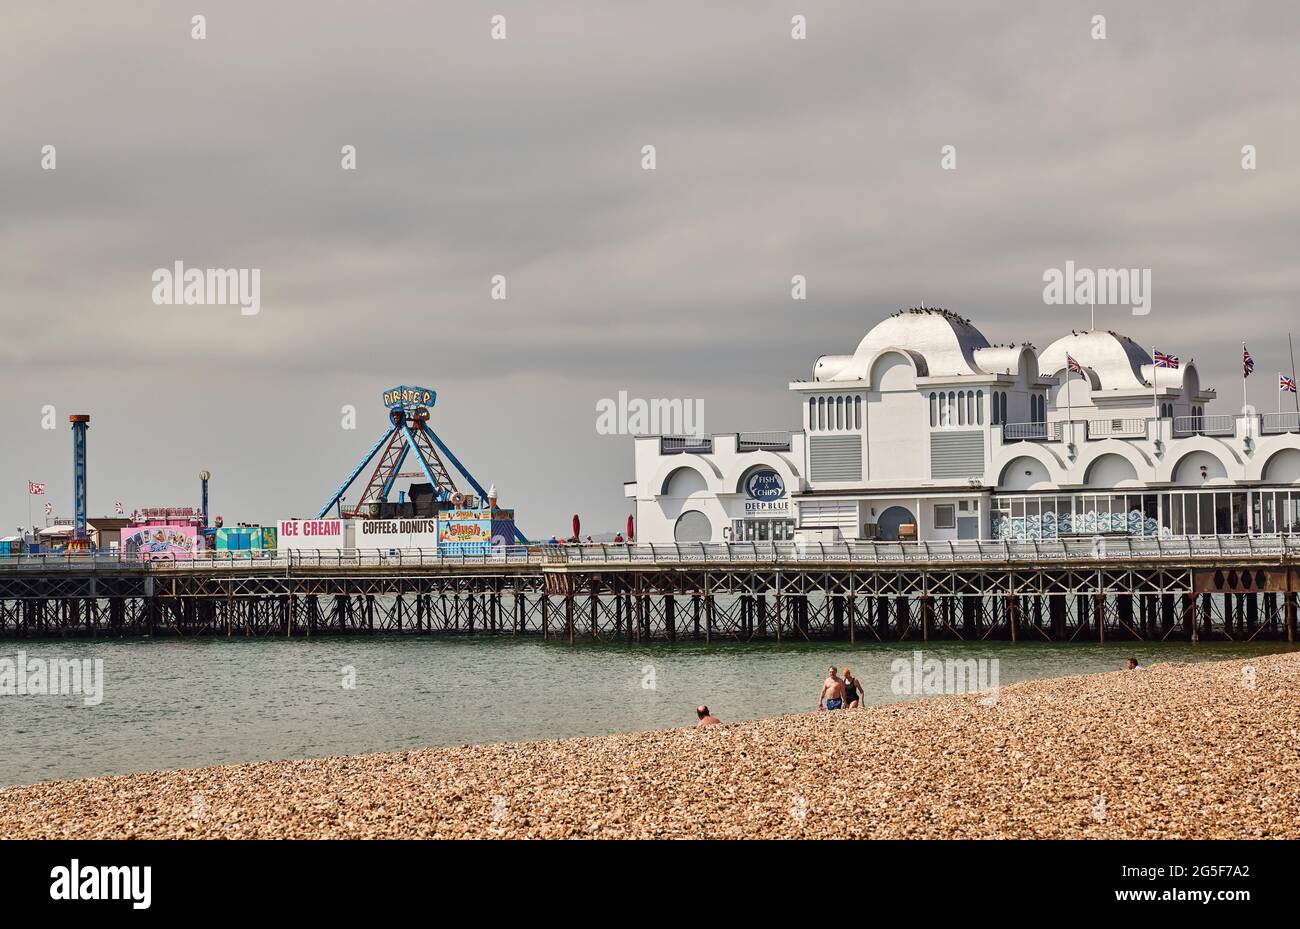 Victorian South Parade Pier, maintenant rénové, bord de mer de Southsea, Portsmouth, Hampshire, côte sud de l'Angleterre, par une journée nuageux Banque D'Images